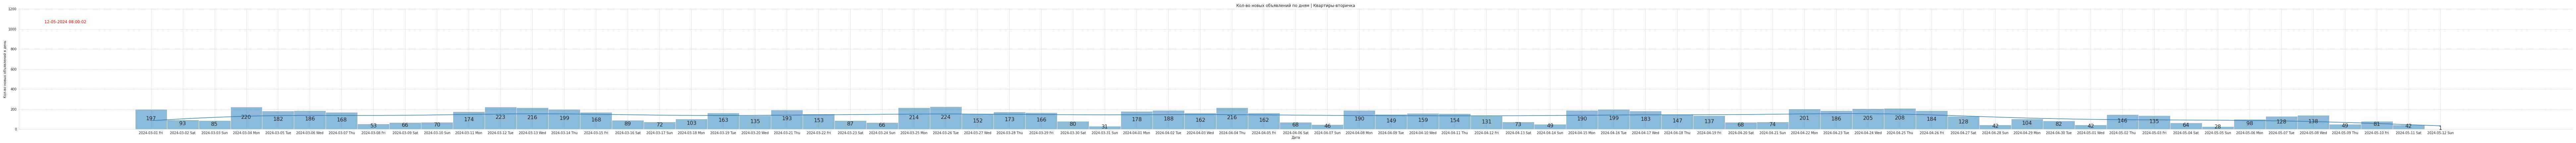 Гистограмма, показывающая количество предложений квартир-вторички в Крыму по дням c 2024-04-01 по сегодняшний день